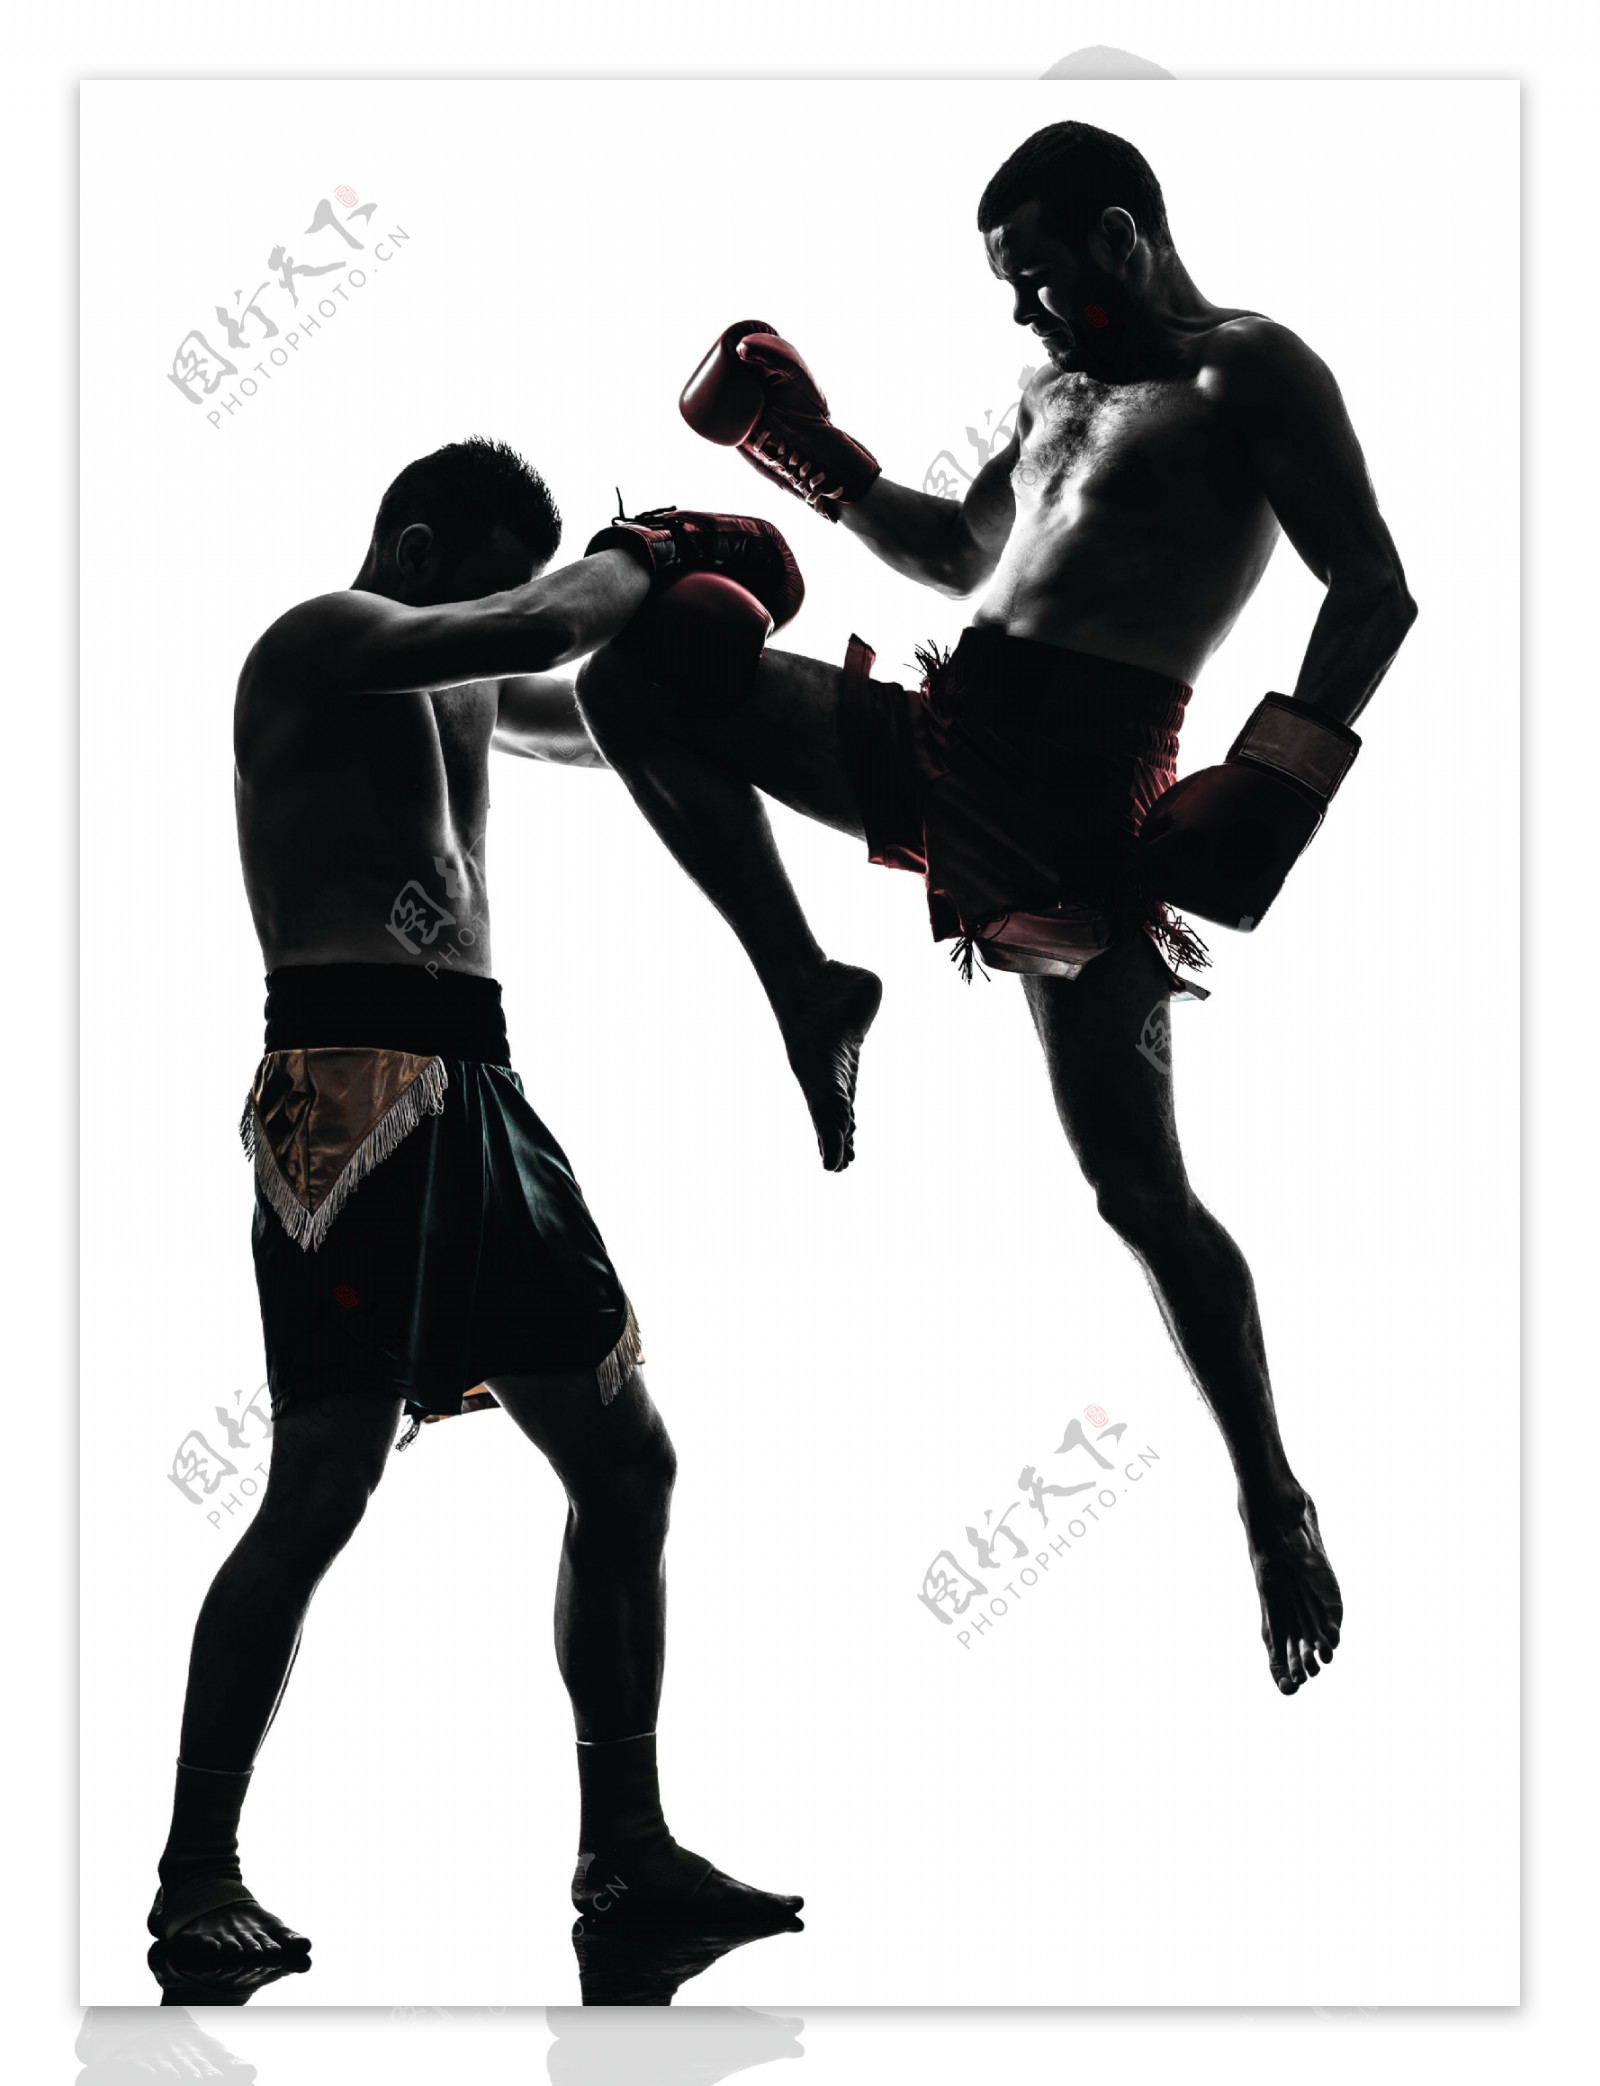 跆拳道比赛的男人图片